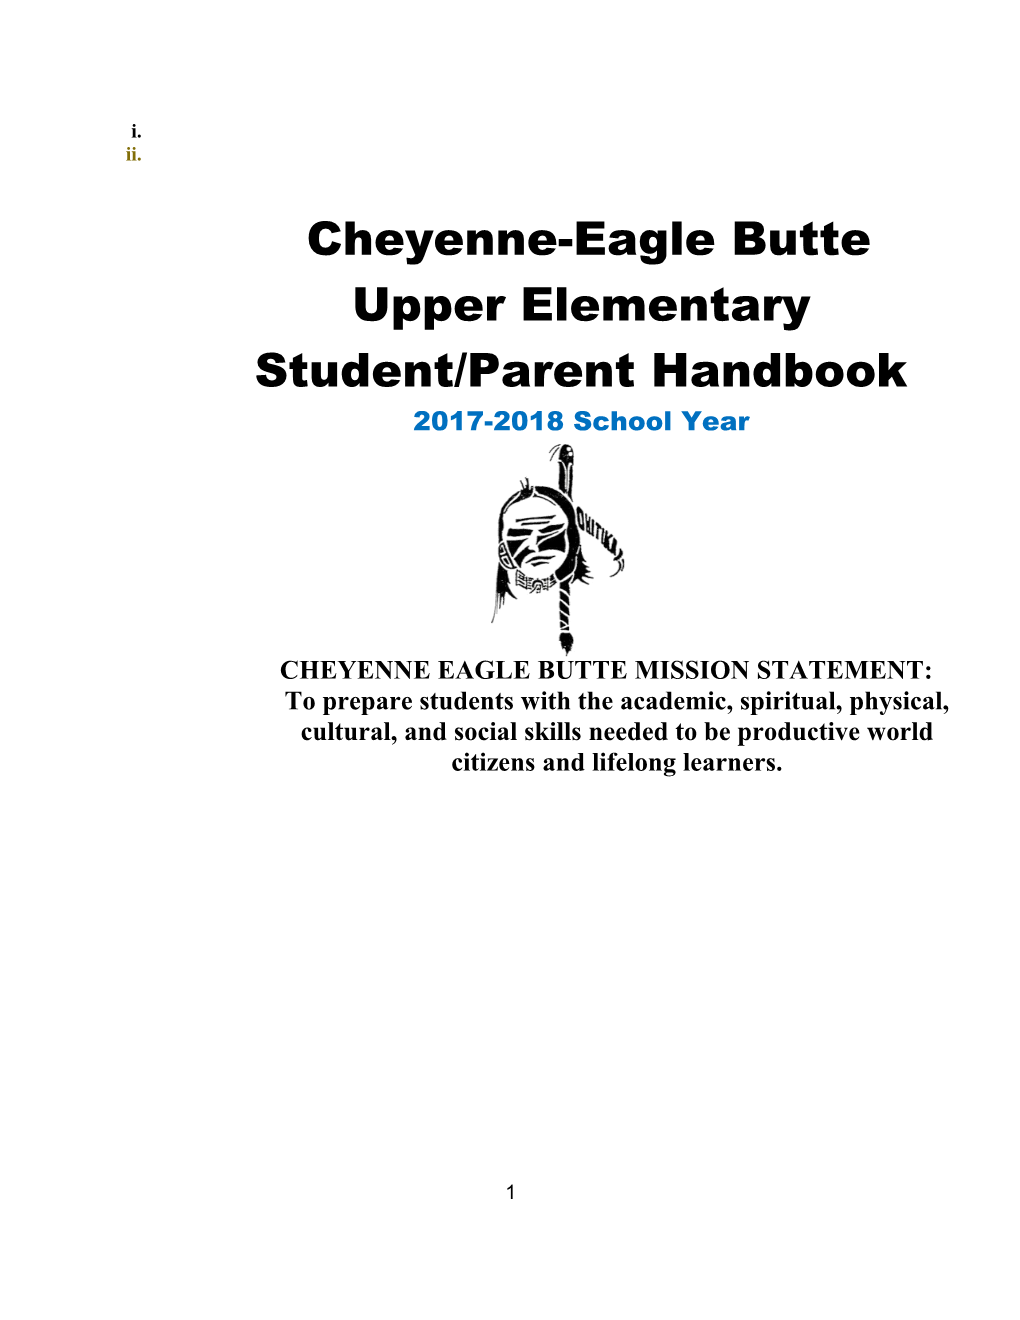 Cheyenne-Eagle Butte Upper Elementary School